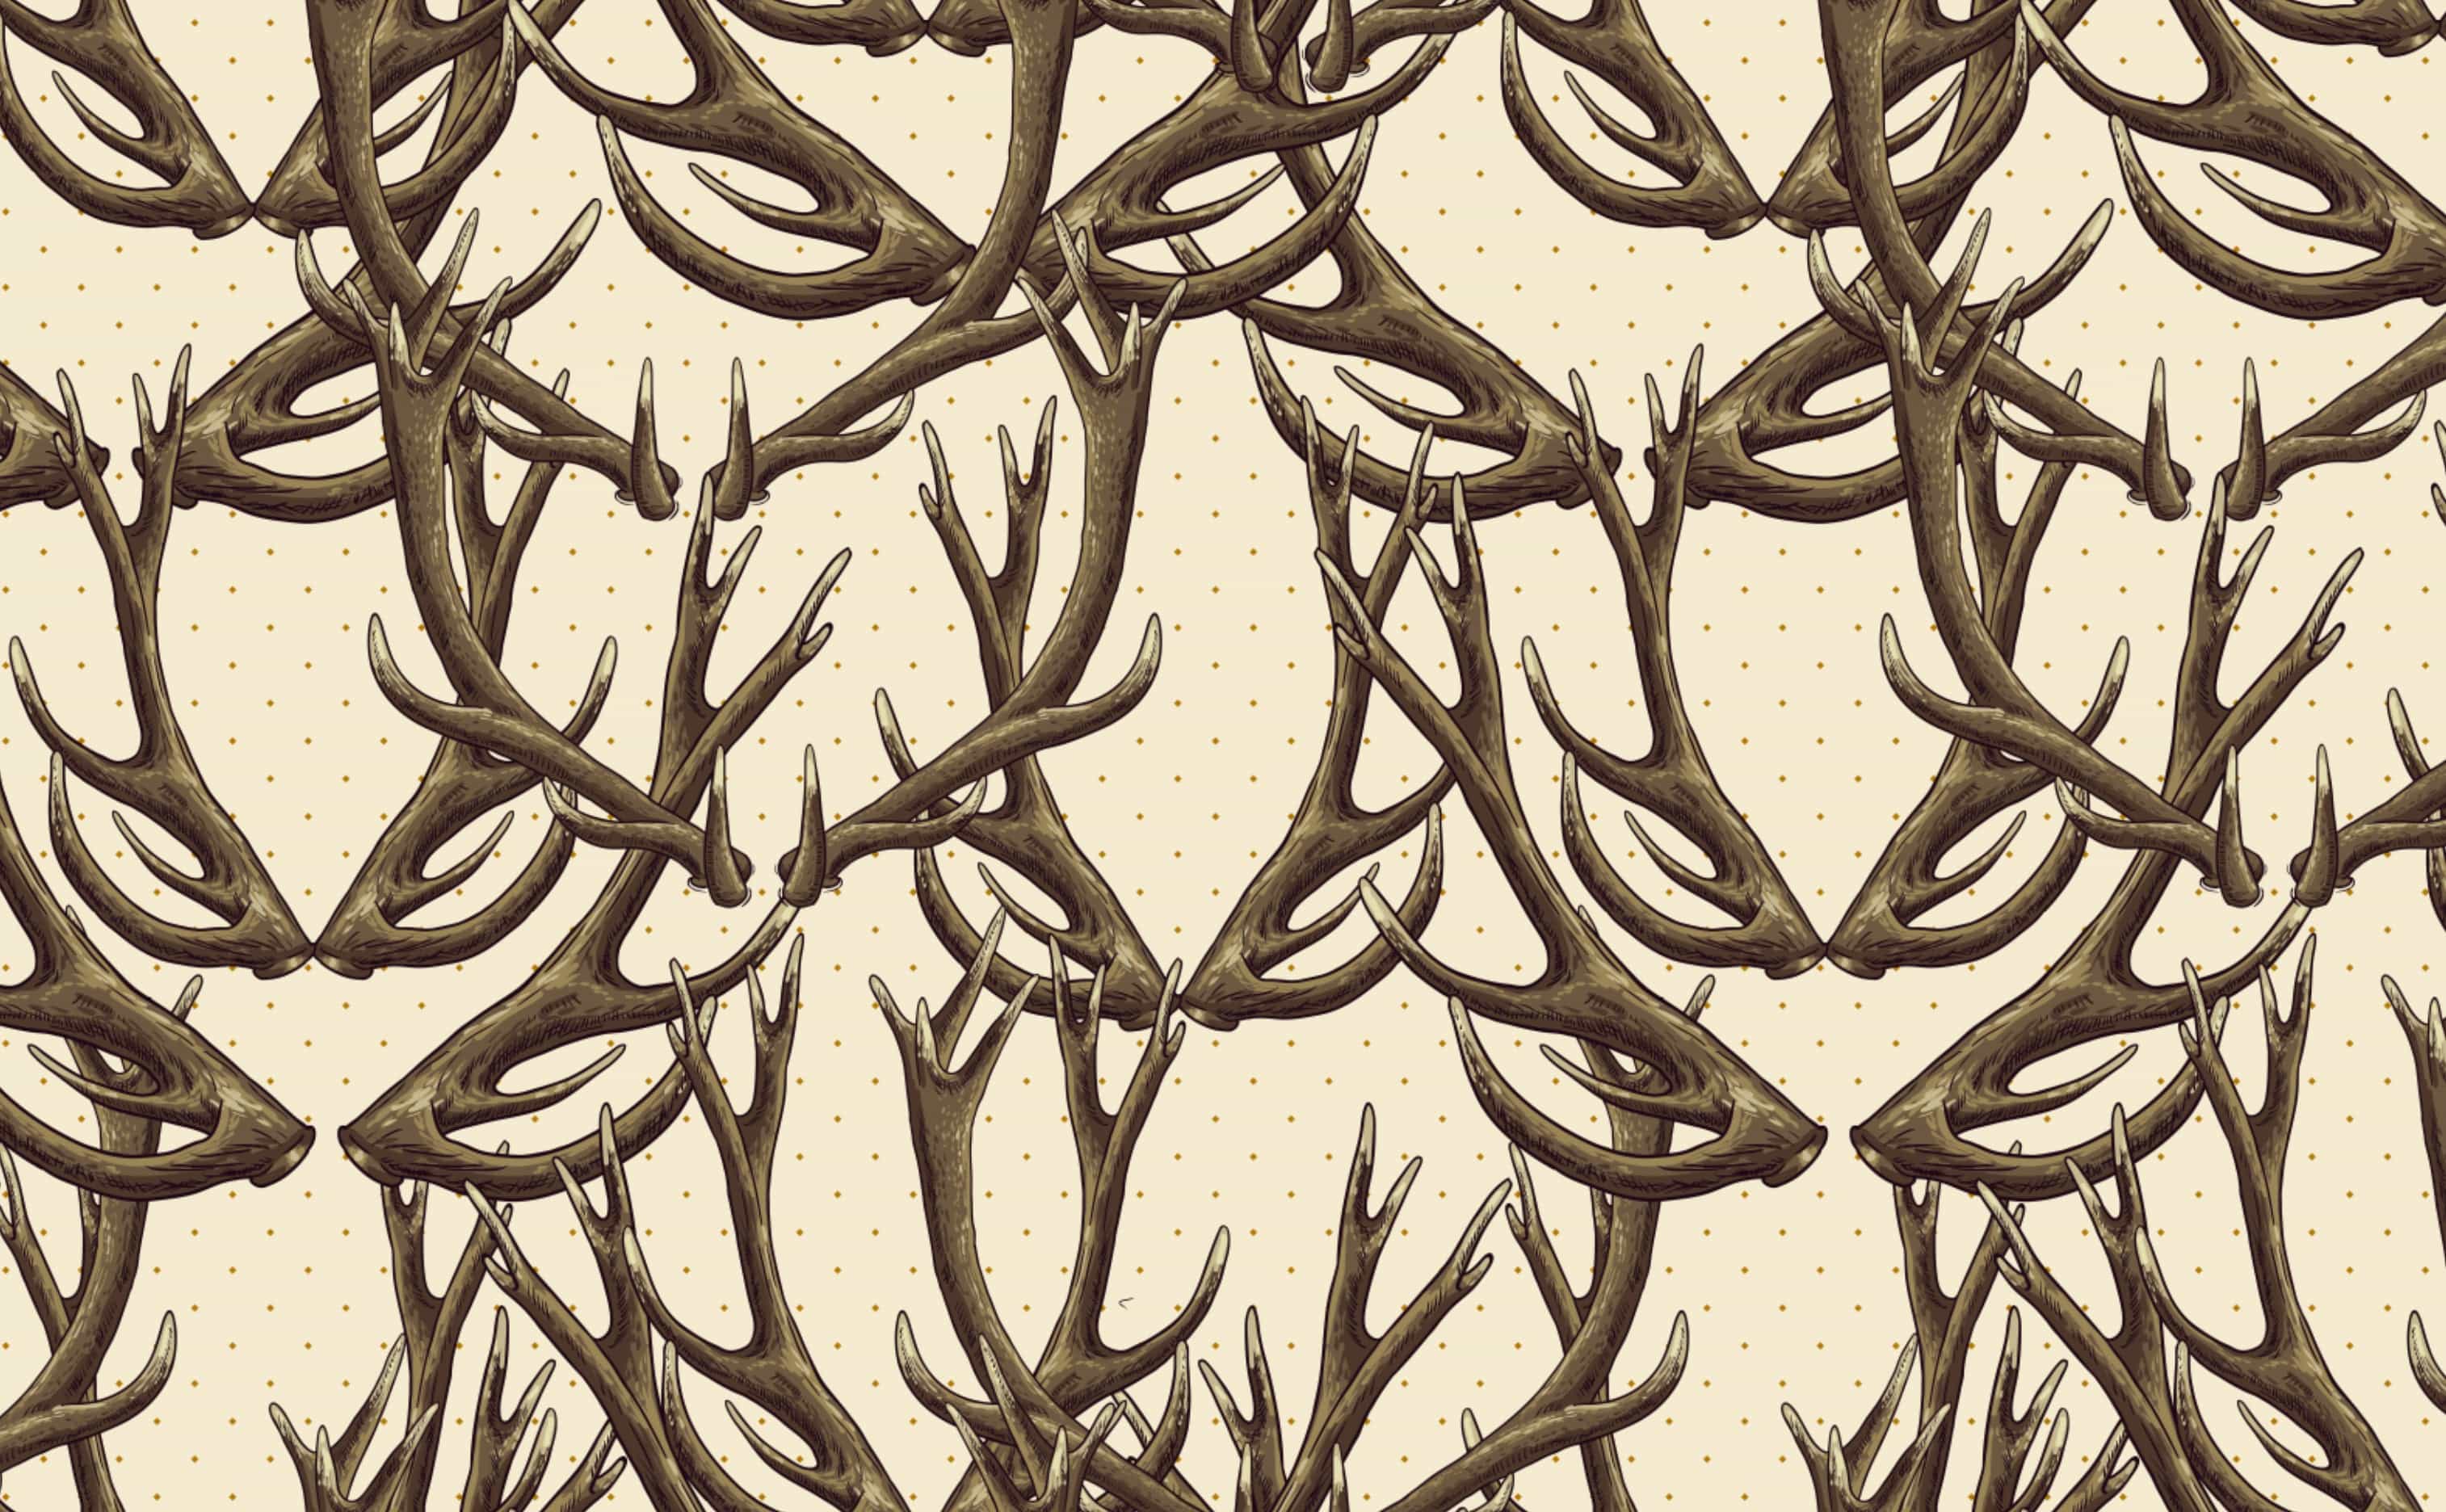 Deer Antlers Wallpaper for Walls. Deer .wallsneedlove.com · In stock